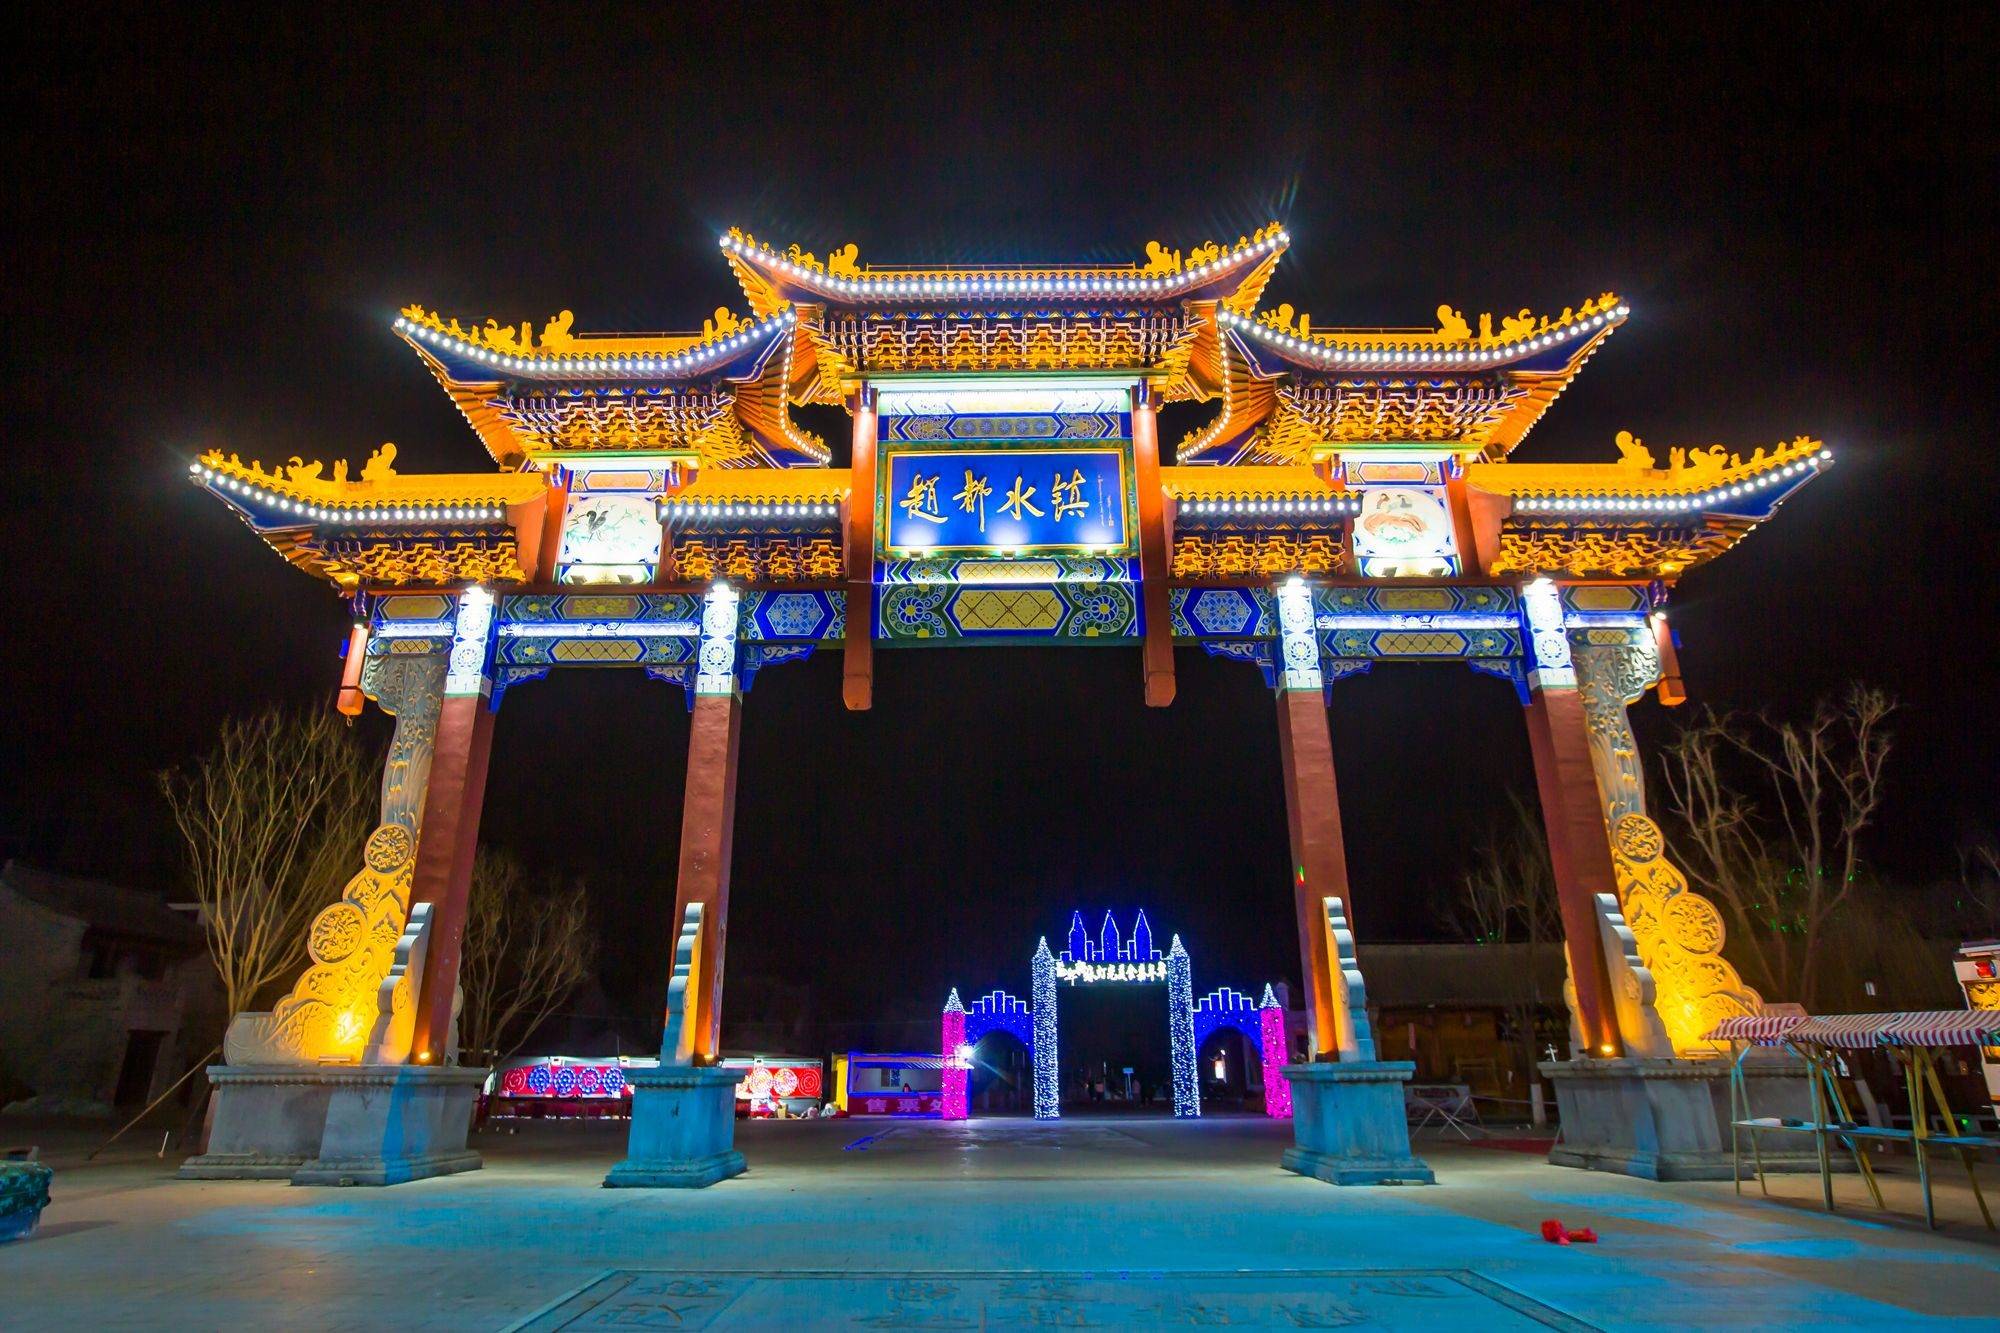 邯郸肥乡有一座赵都水镇,古色古香,吸引了众多游客前来打卡